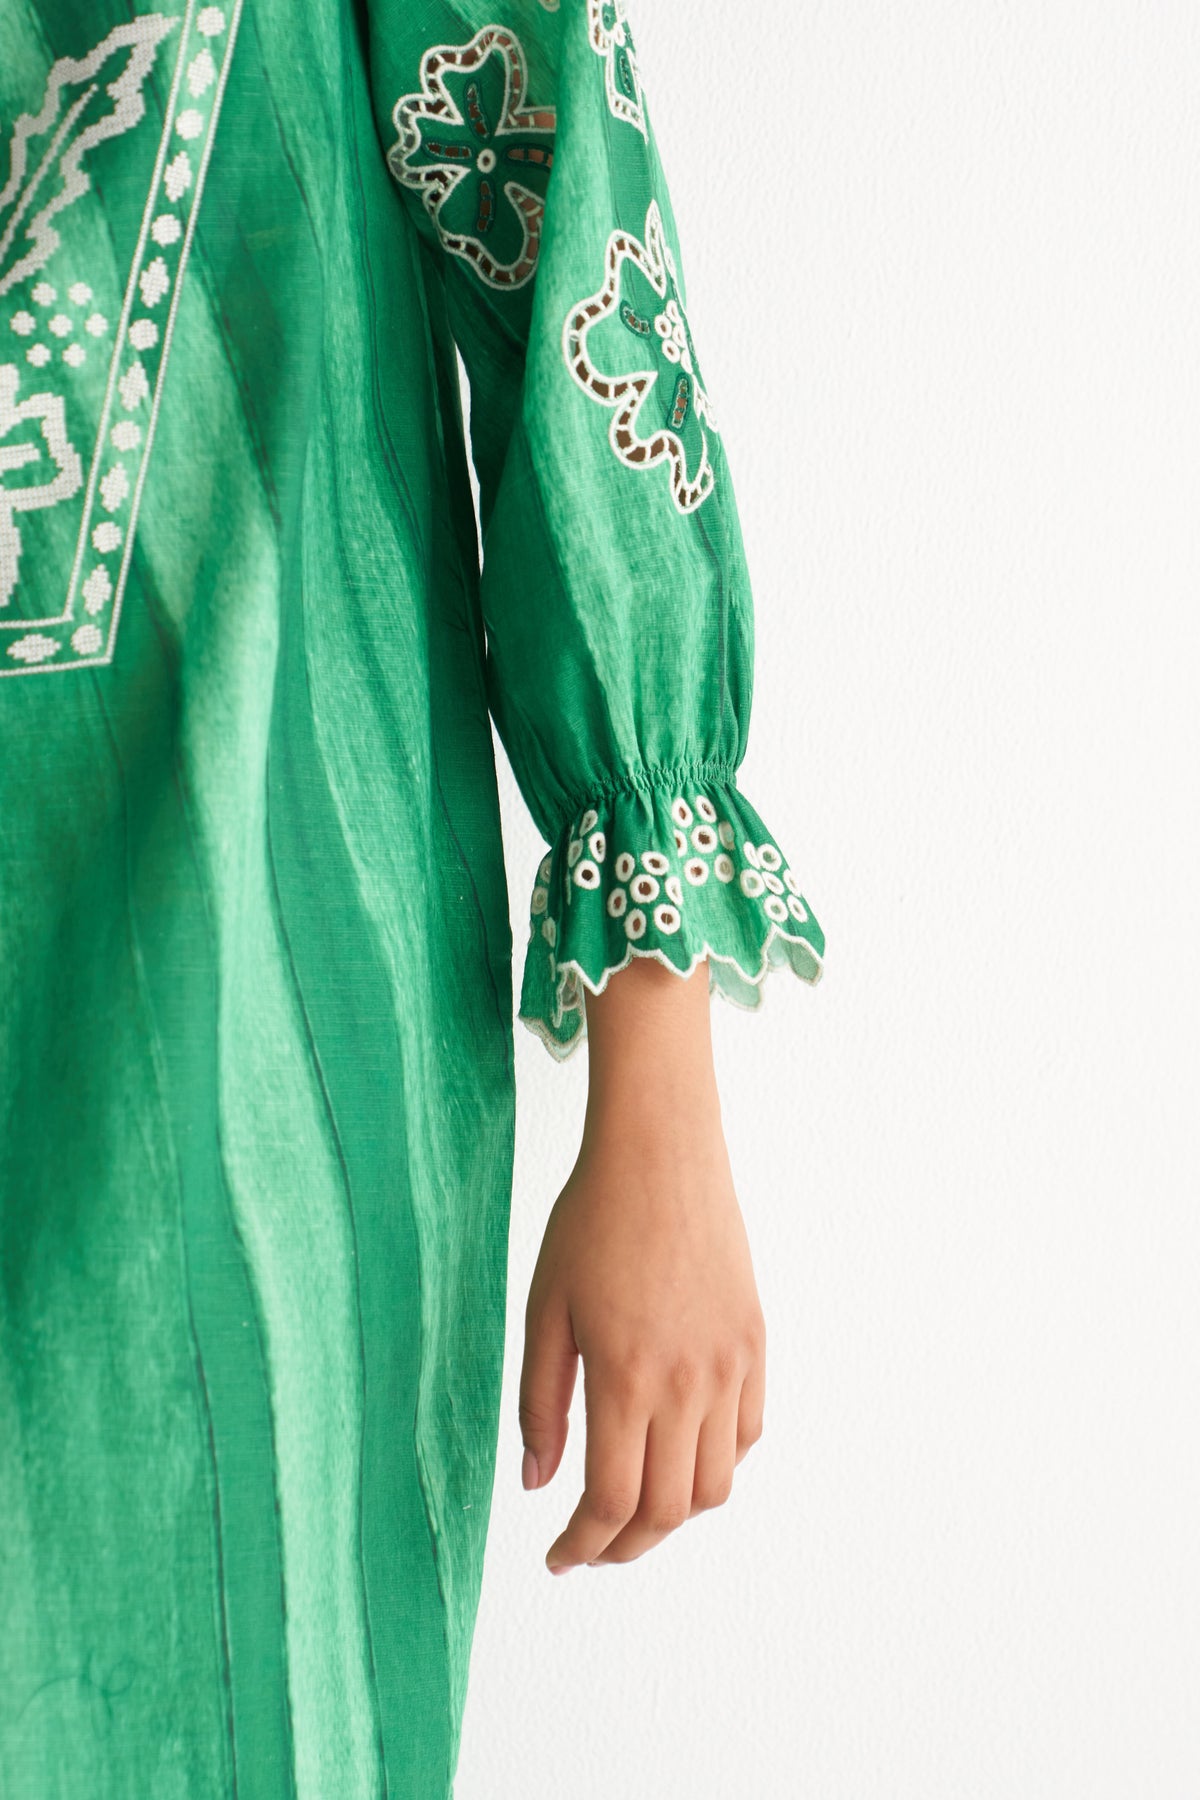 Green Melange Cutwork & Crosss-stitch shirt dress